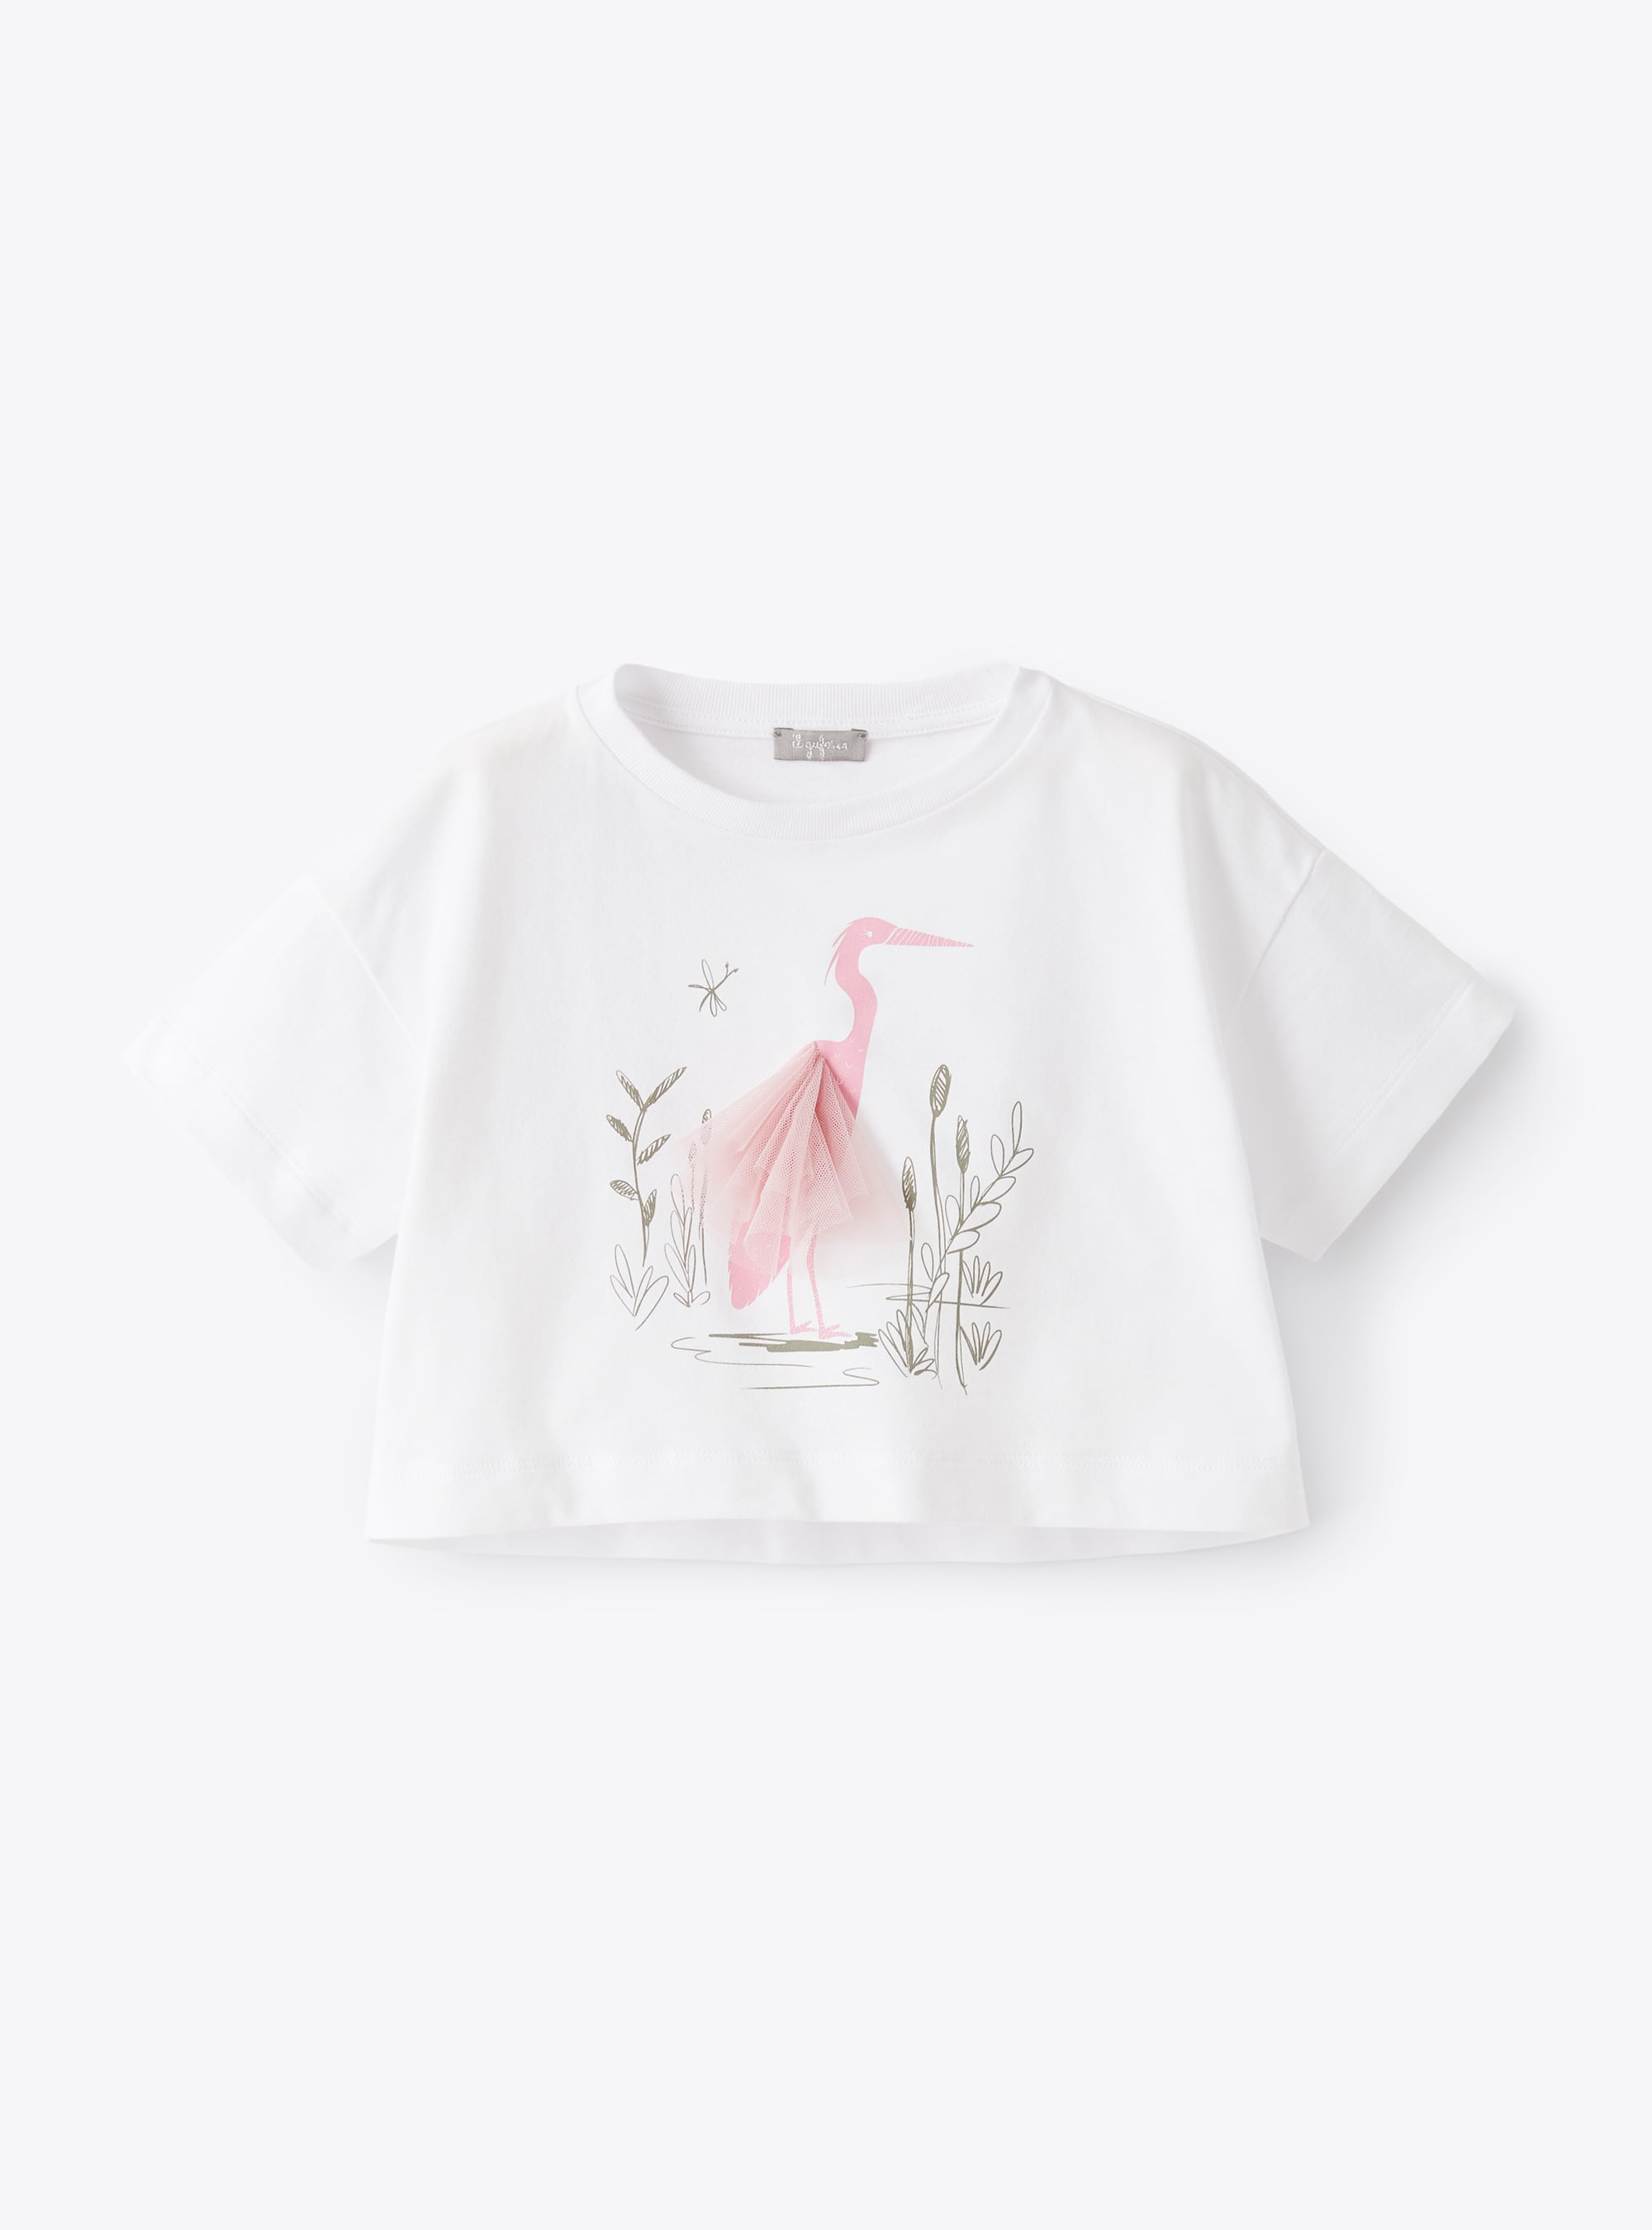 Weißes T-Shirt mit Flamingo-Aufdruck - Weiss | Il Gufo